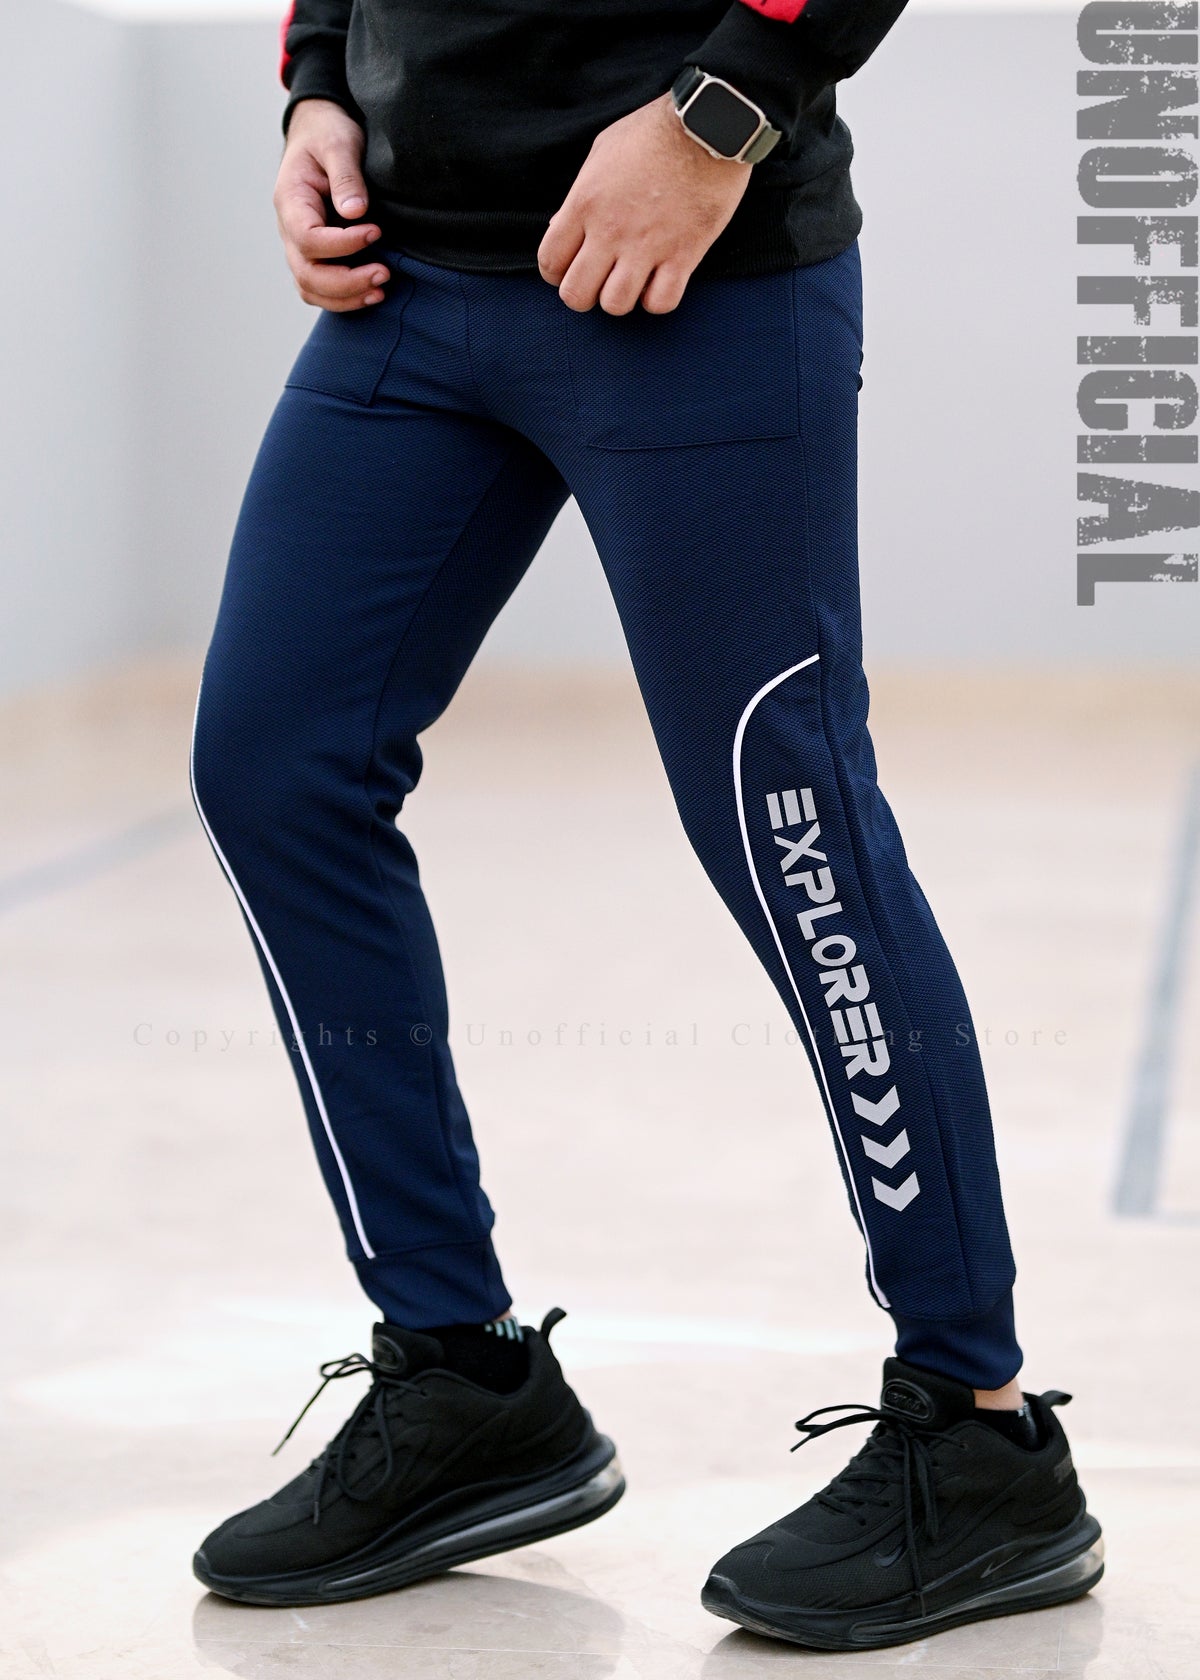 Slim Fit Navy Blue Printed Trouser